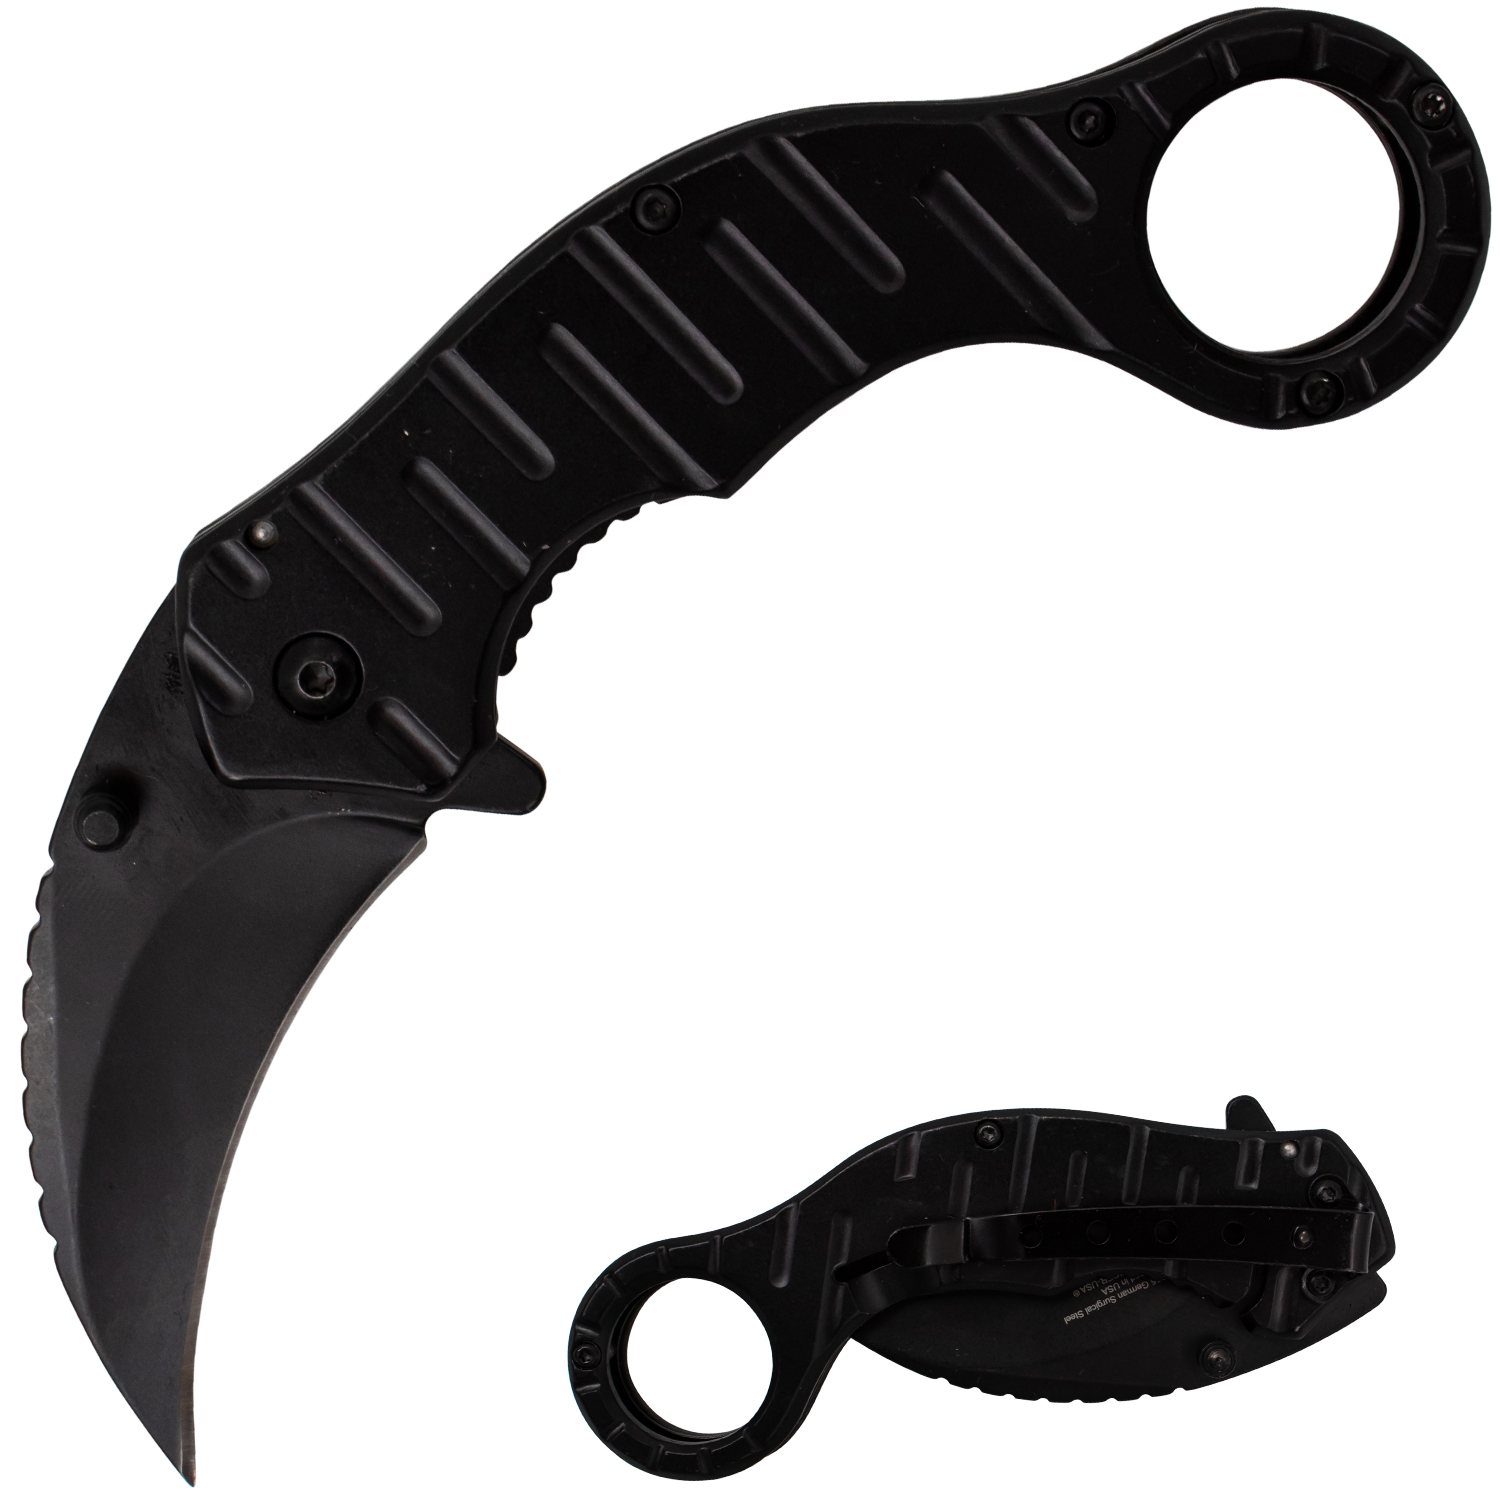 Tiger USA Trigger Action Folding Knife Black Steel